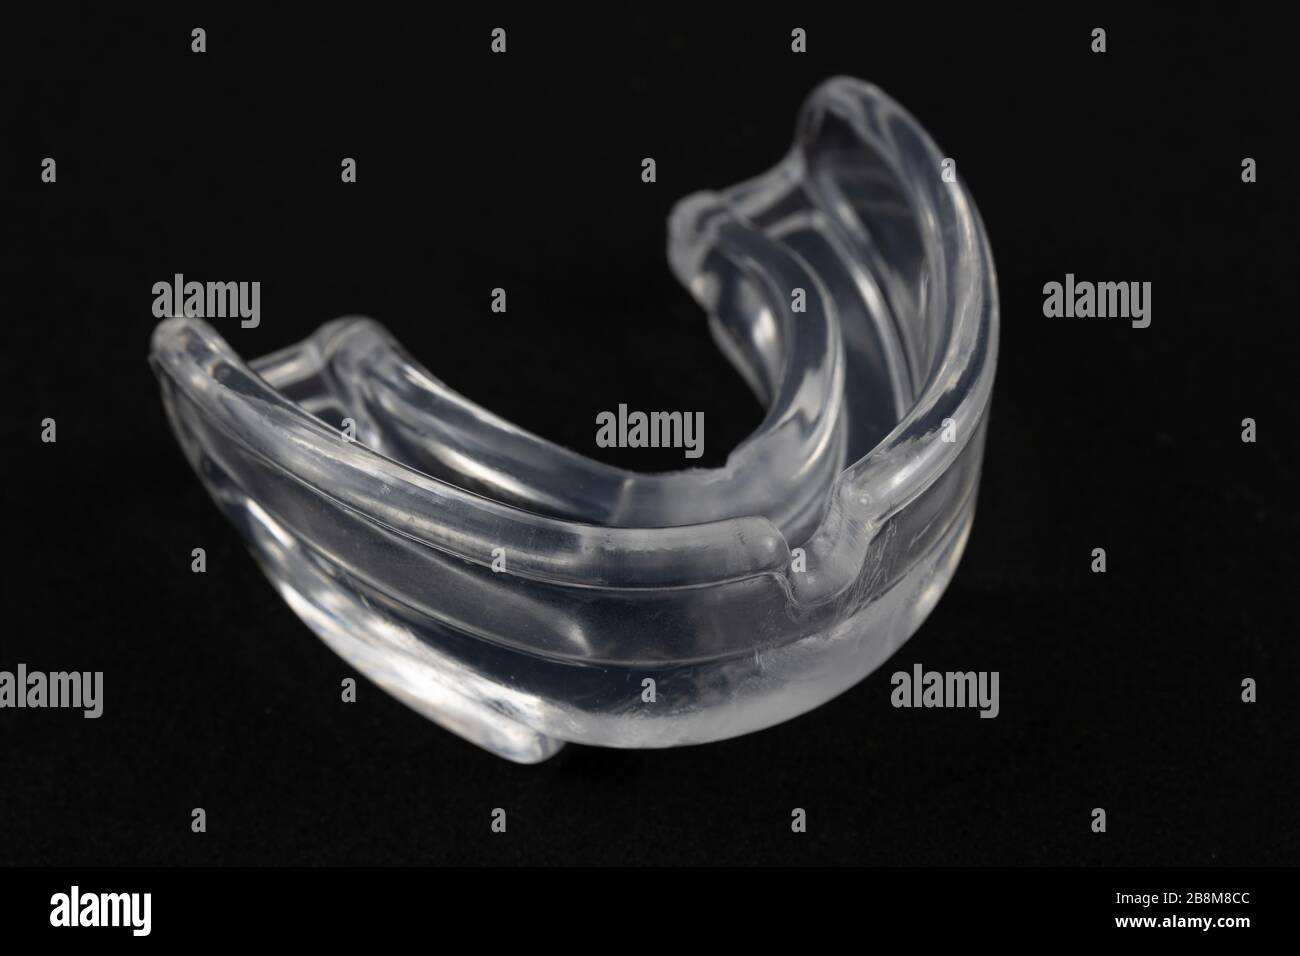 Dispositivo di protezione per la bocca per prevenire e ridurre le lesioni. Fotografia di prodotti sportivi Foto Stock